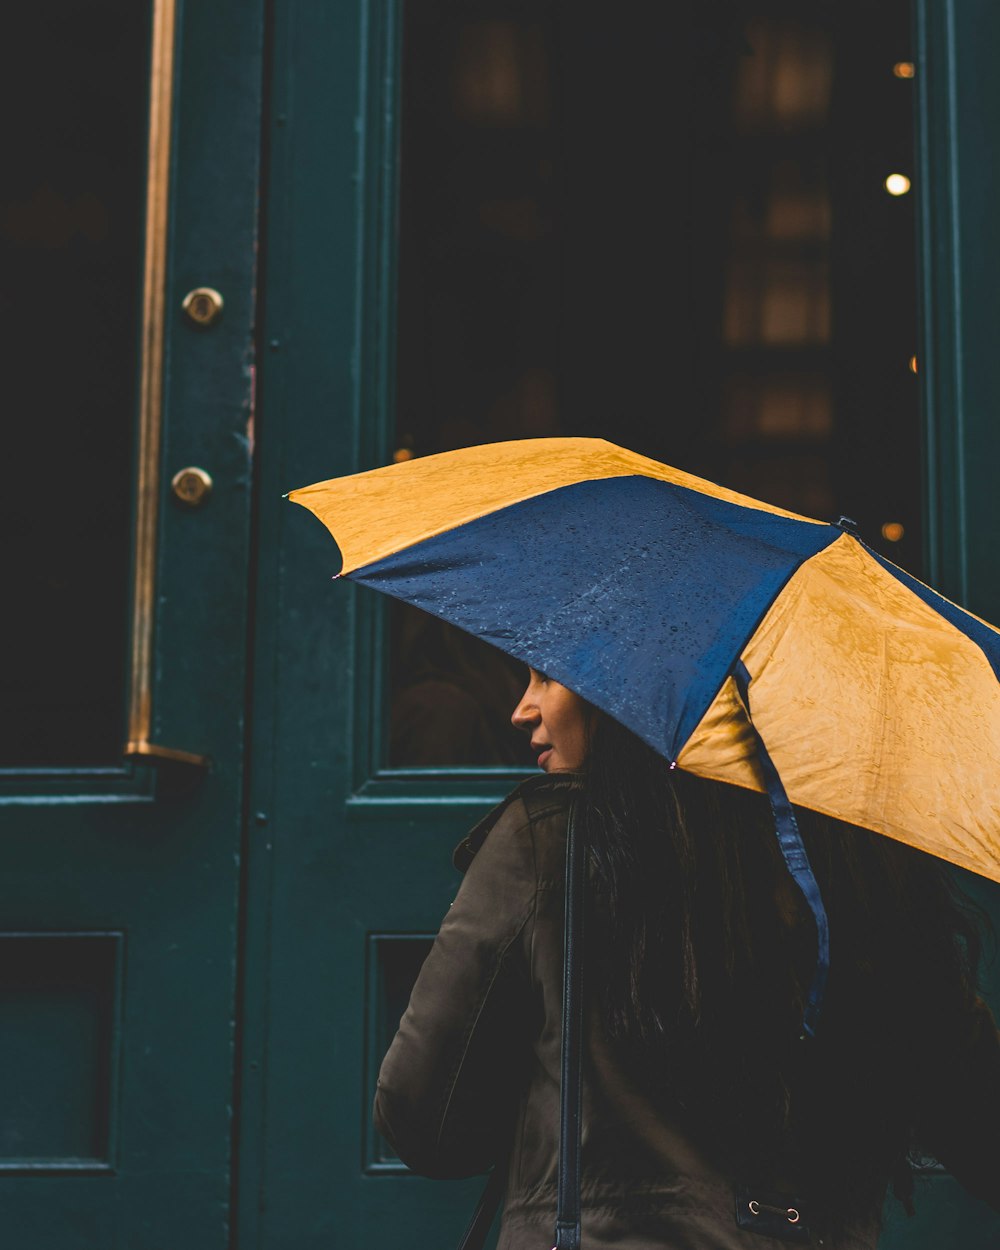 mulher sob o guarda-chuva amarelo e azul ao lado da porta de madeira verde